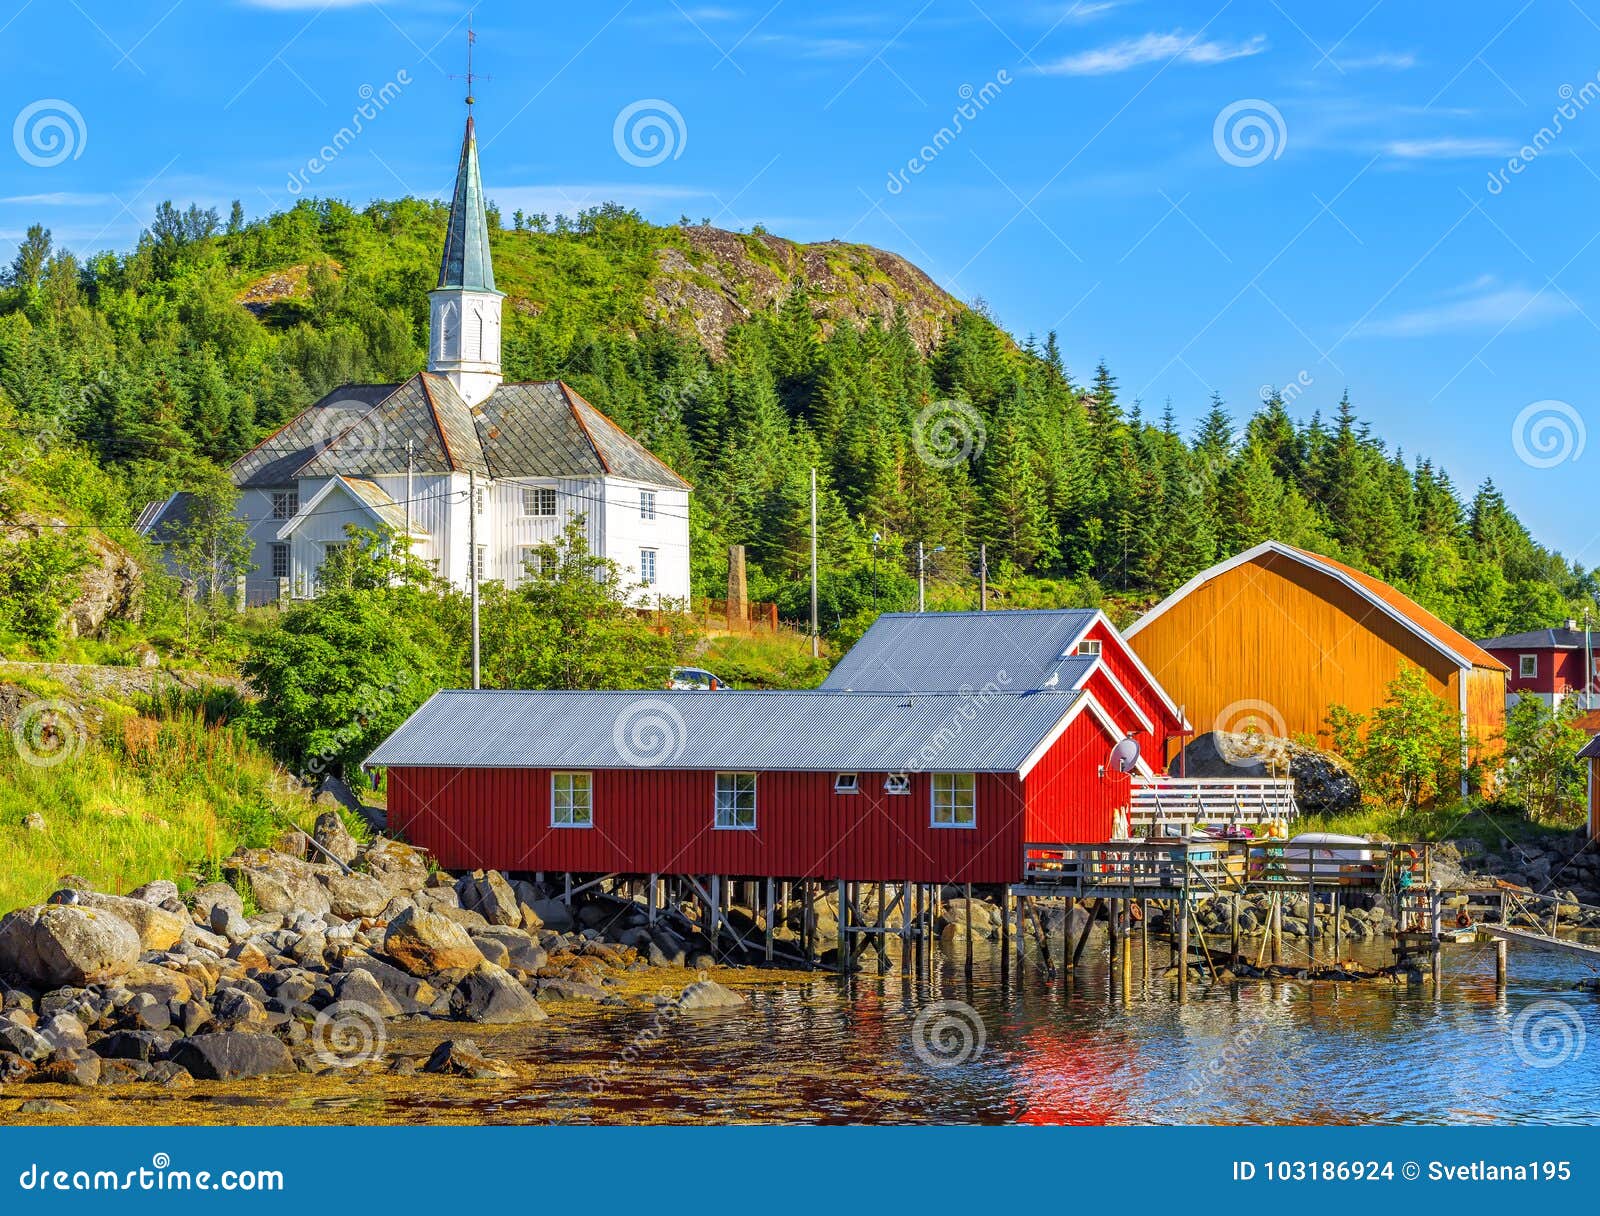 moskenes church in moskenes fishing village in lofoten islands.